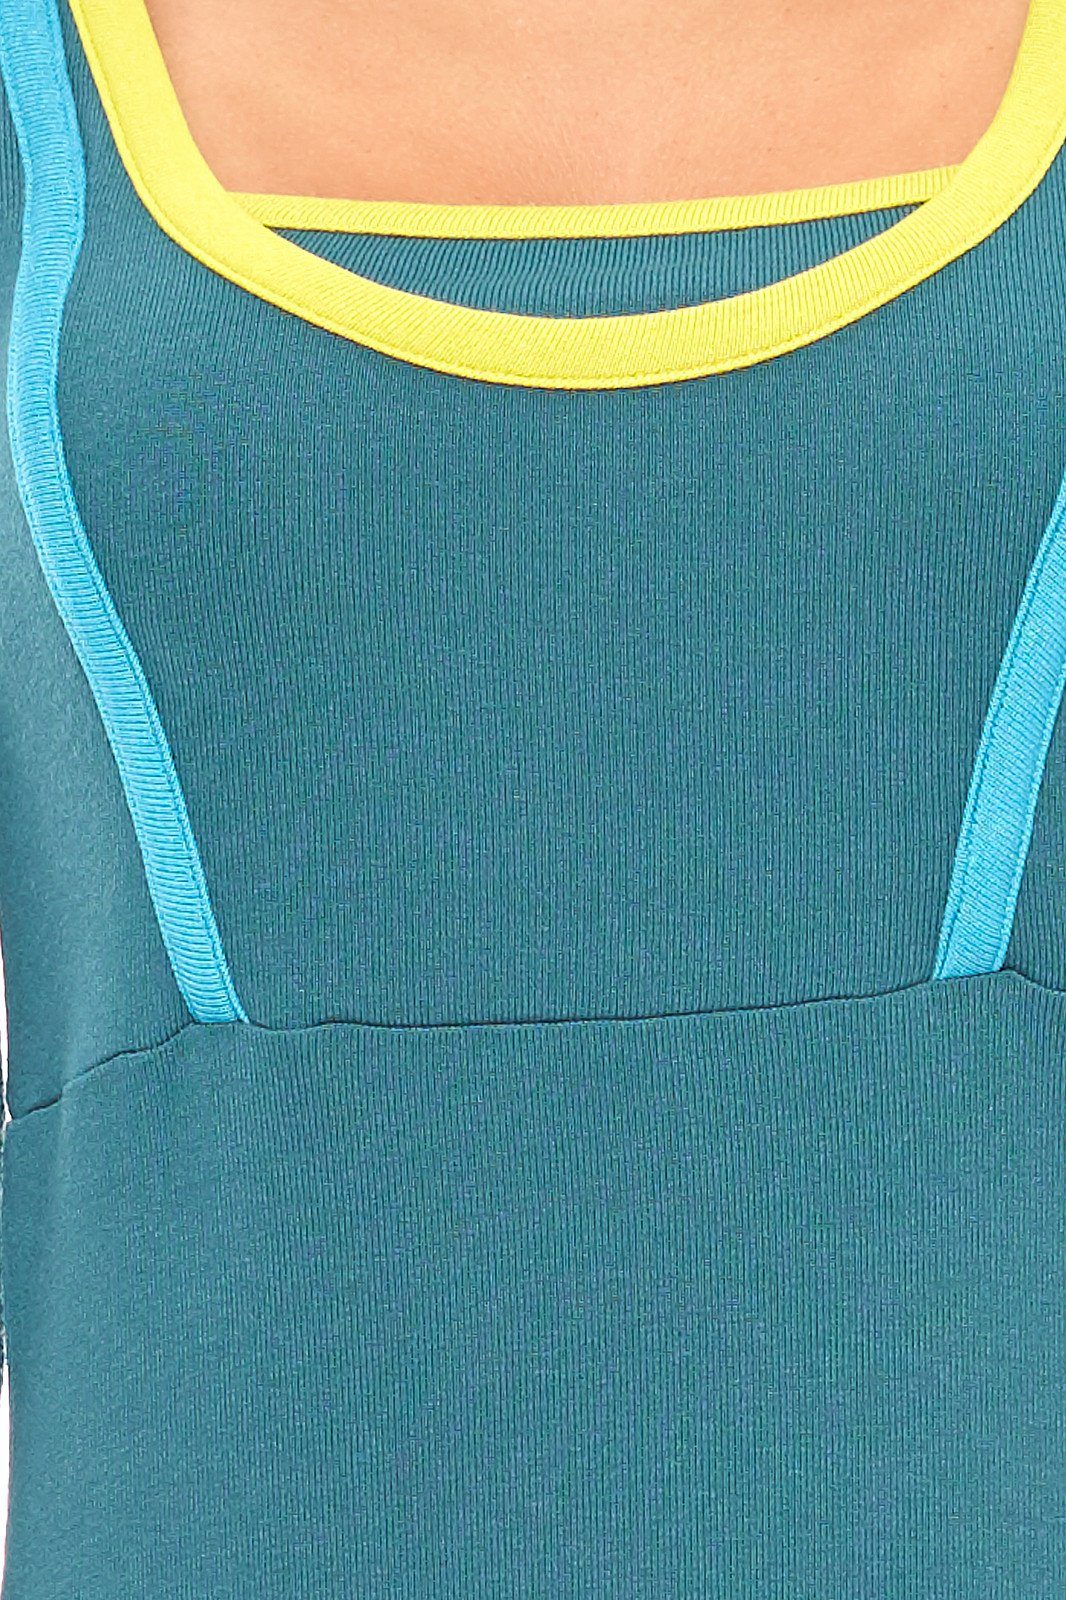 lange vacuum Mini Kleid sportliches Jerseykleid Jerseykleid VACUUM Grün Ärmel